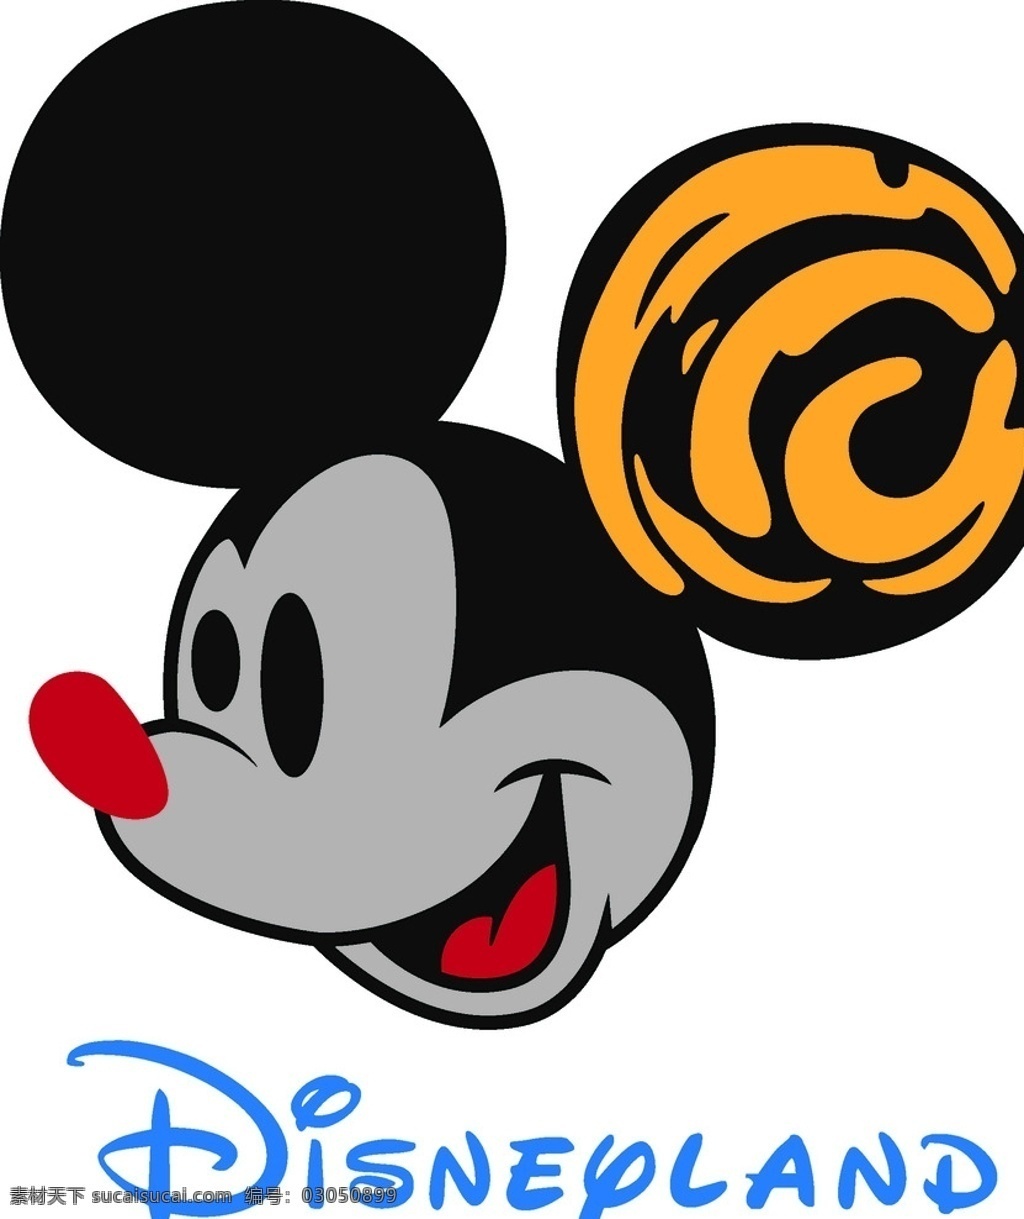 迪士尼米奇头 坐着的米奇 字母 mickey 迪士尼 动画 卡通 米老鼠 米奇 高飞 mouse 伸手米奇 服装设计